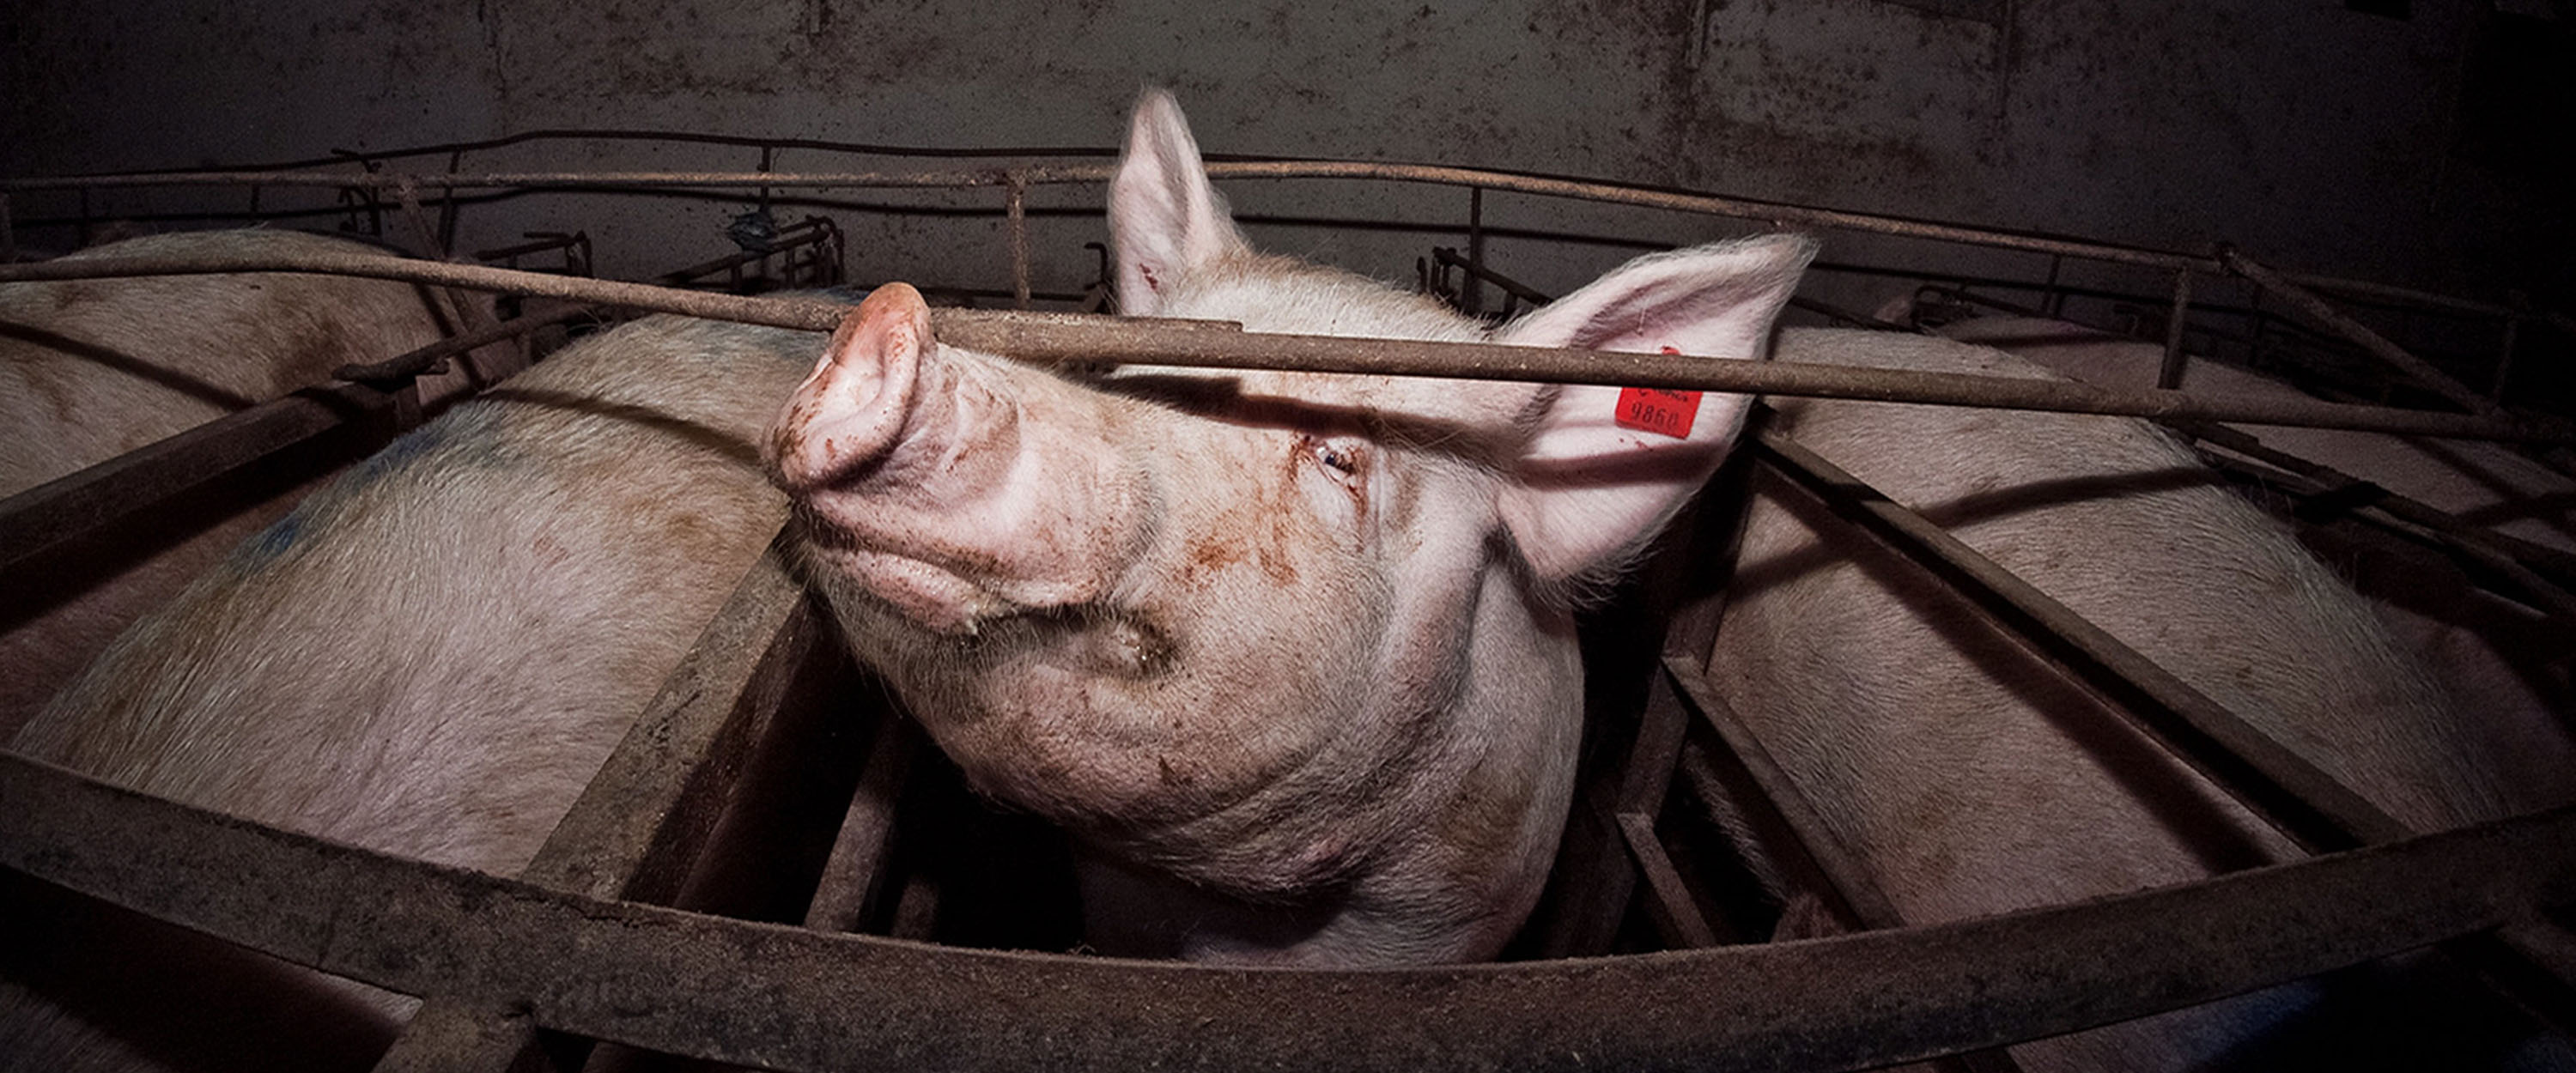 Schwein in Tierhaltungsindustrie